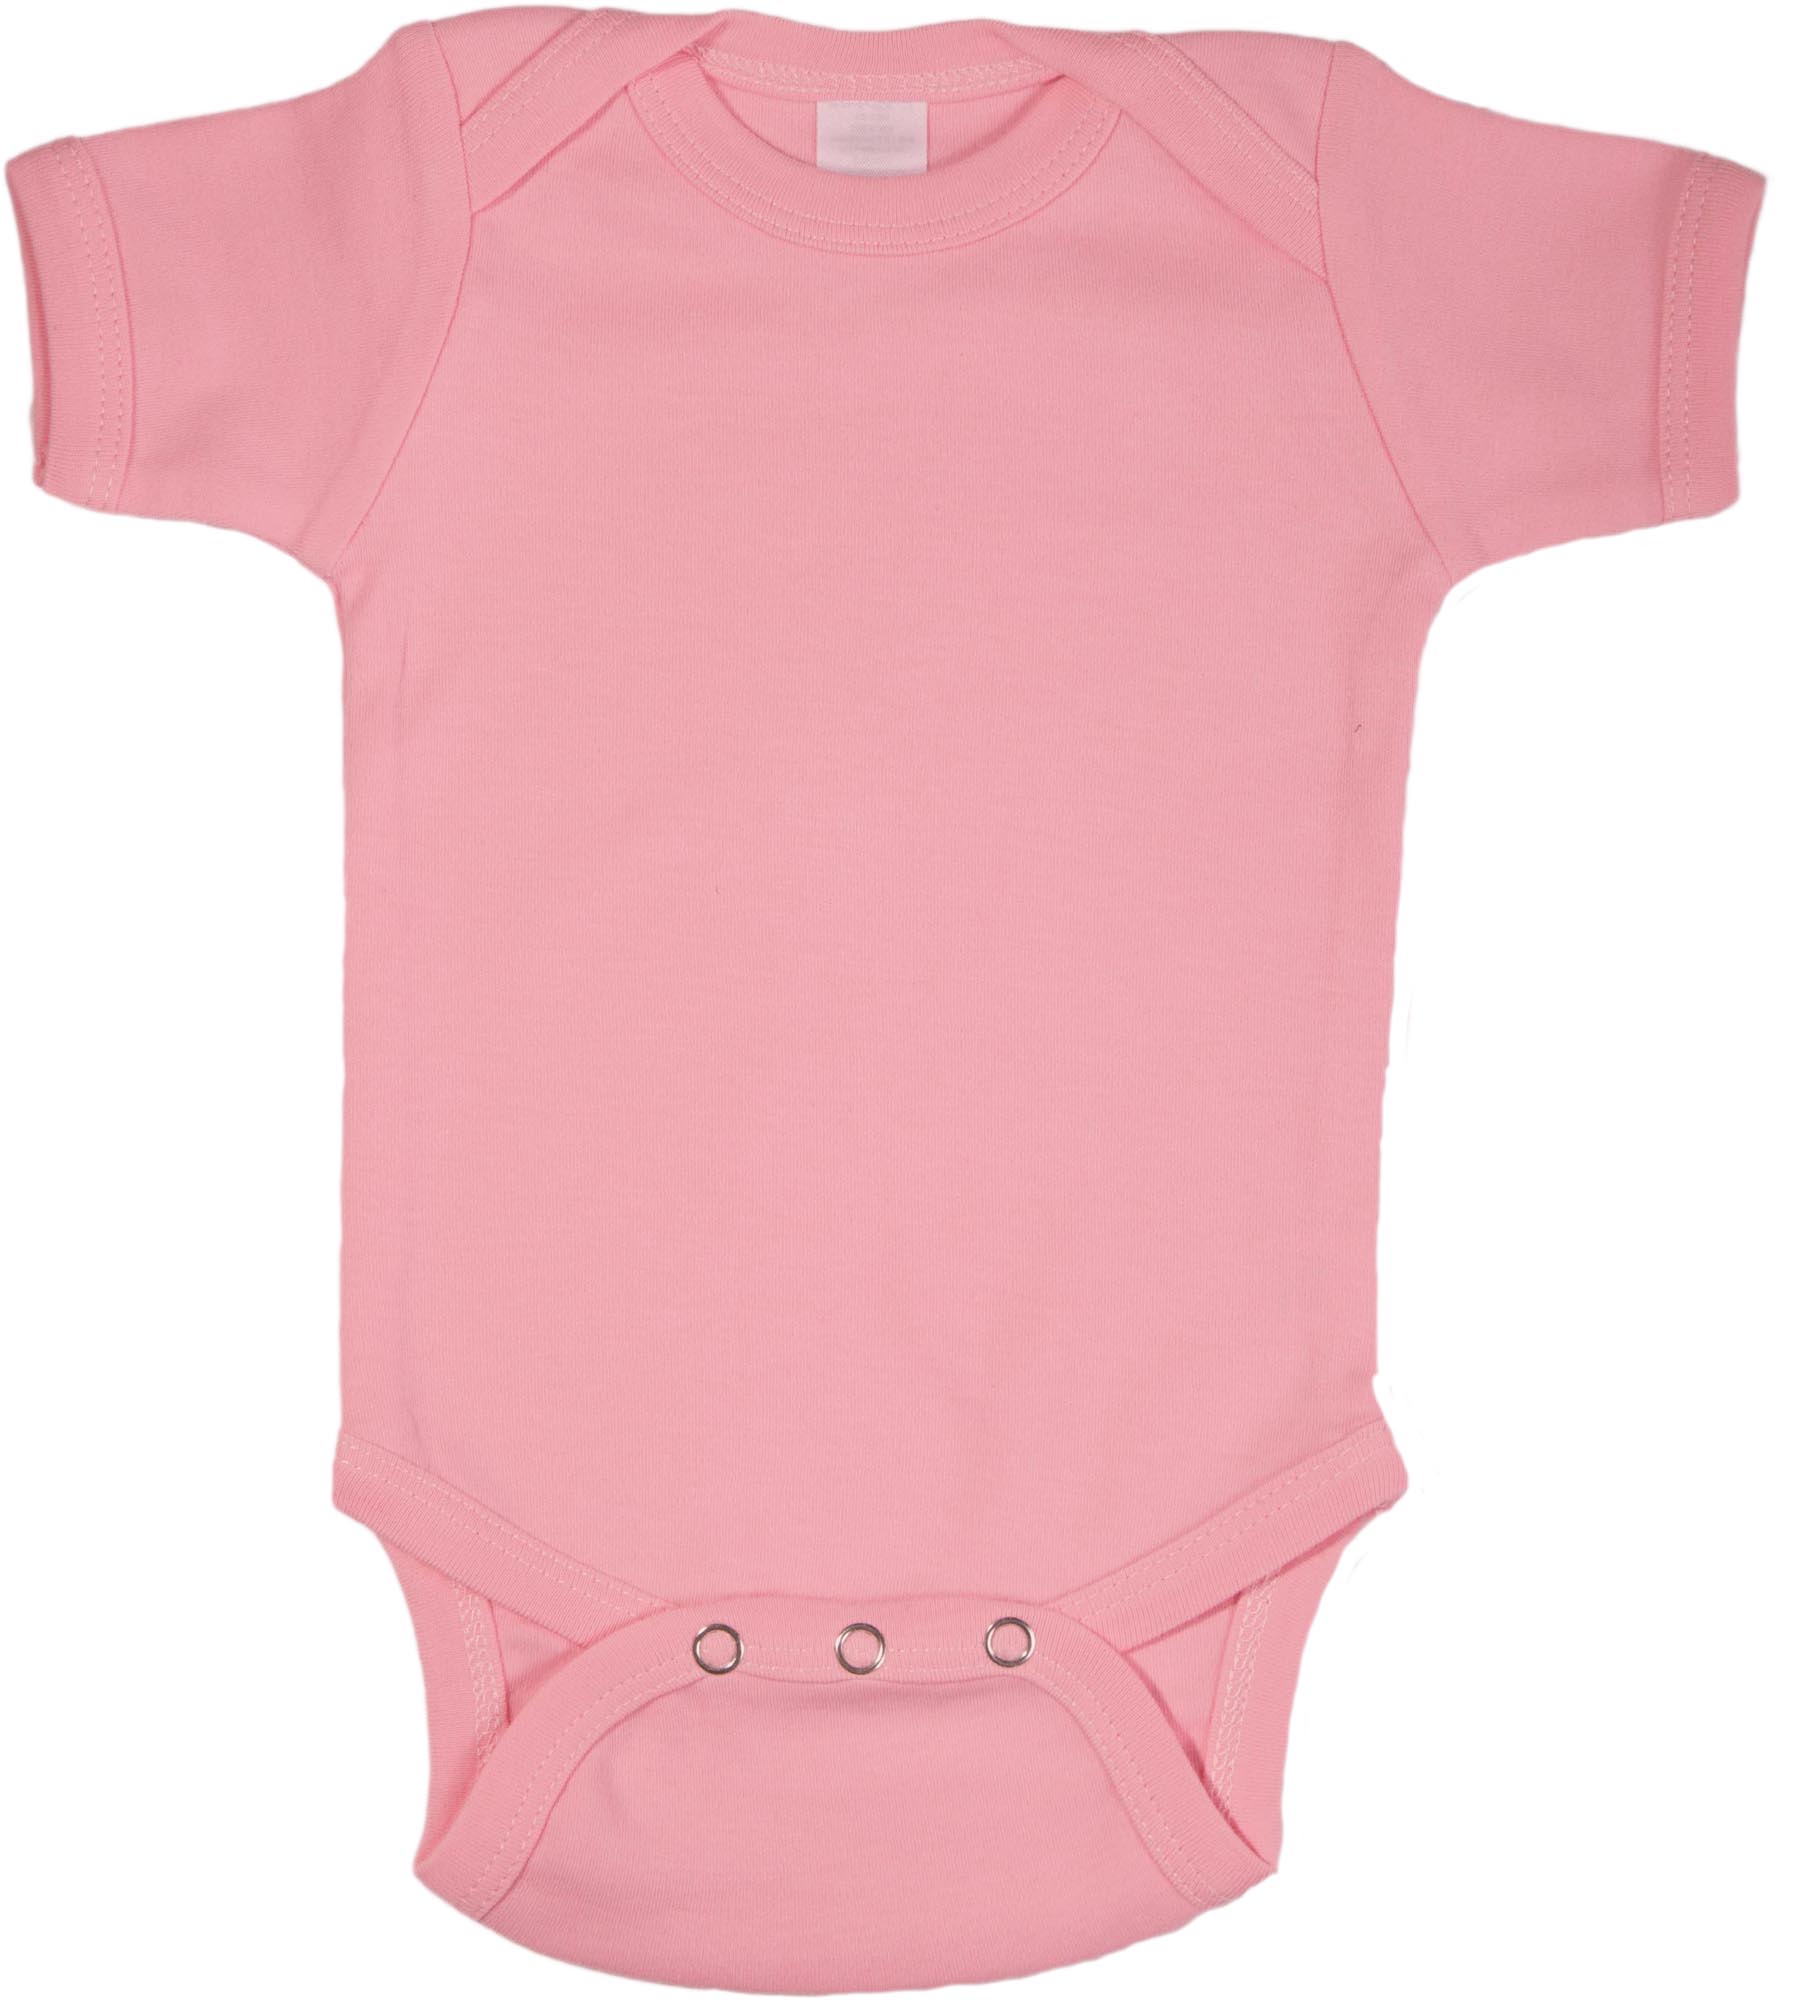 Light Pink Bodysuit   Short Sleeve   Baby N Toddler